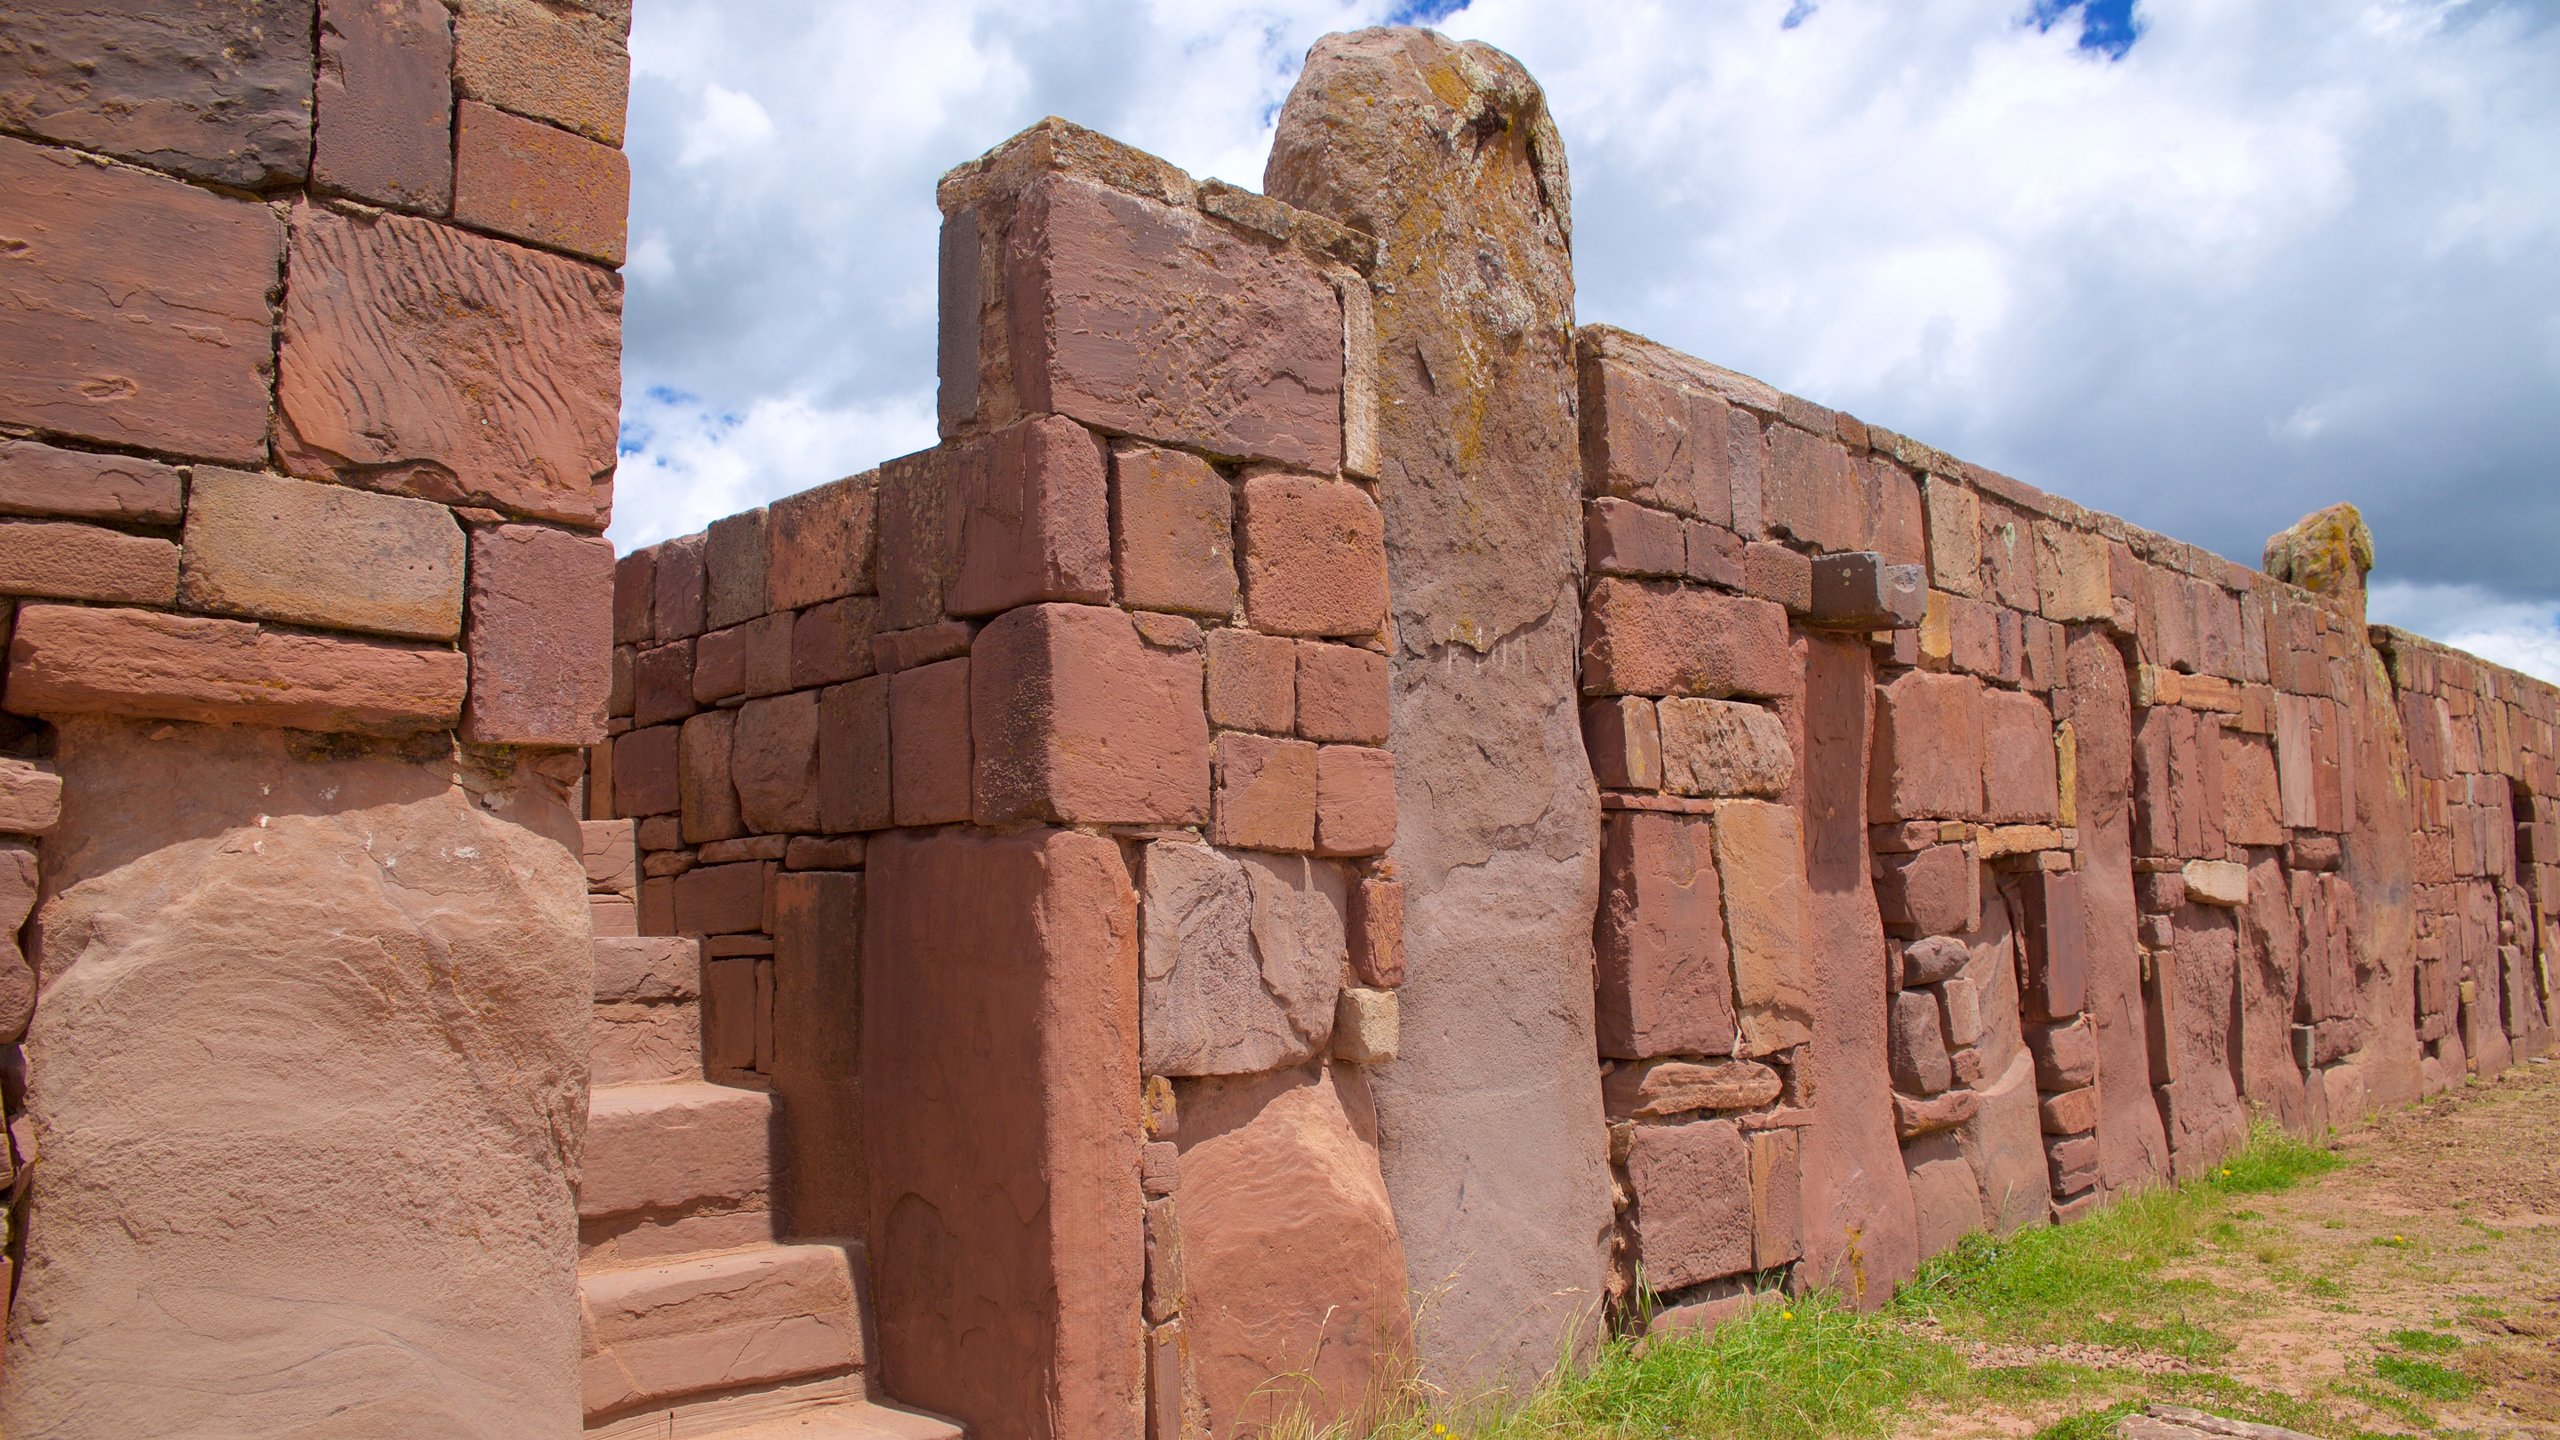 Du lịch Bolivia: Thành phố cổ Tiwanaku